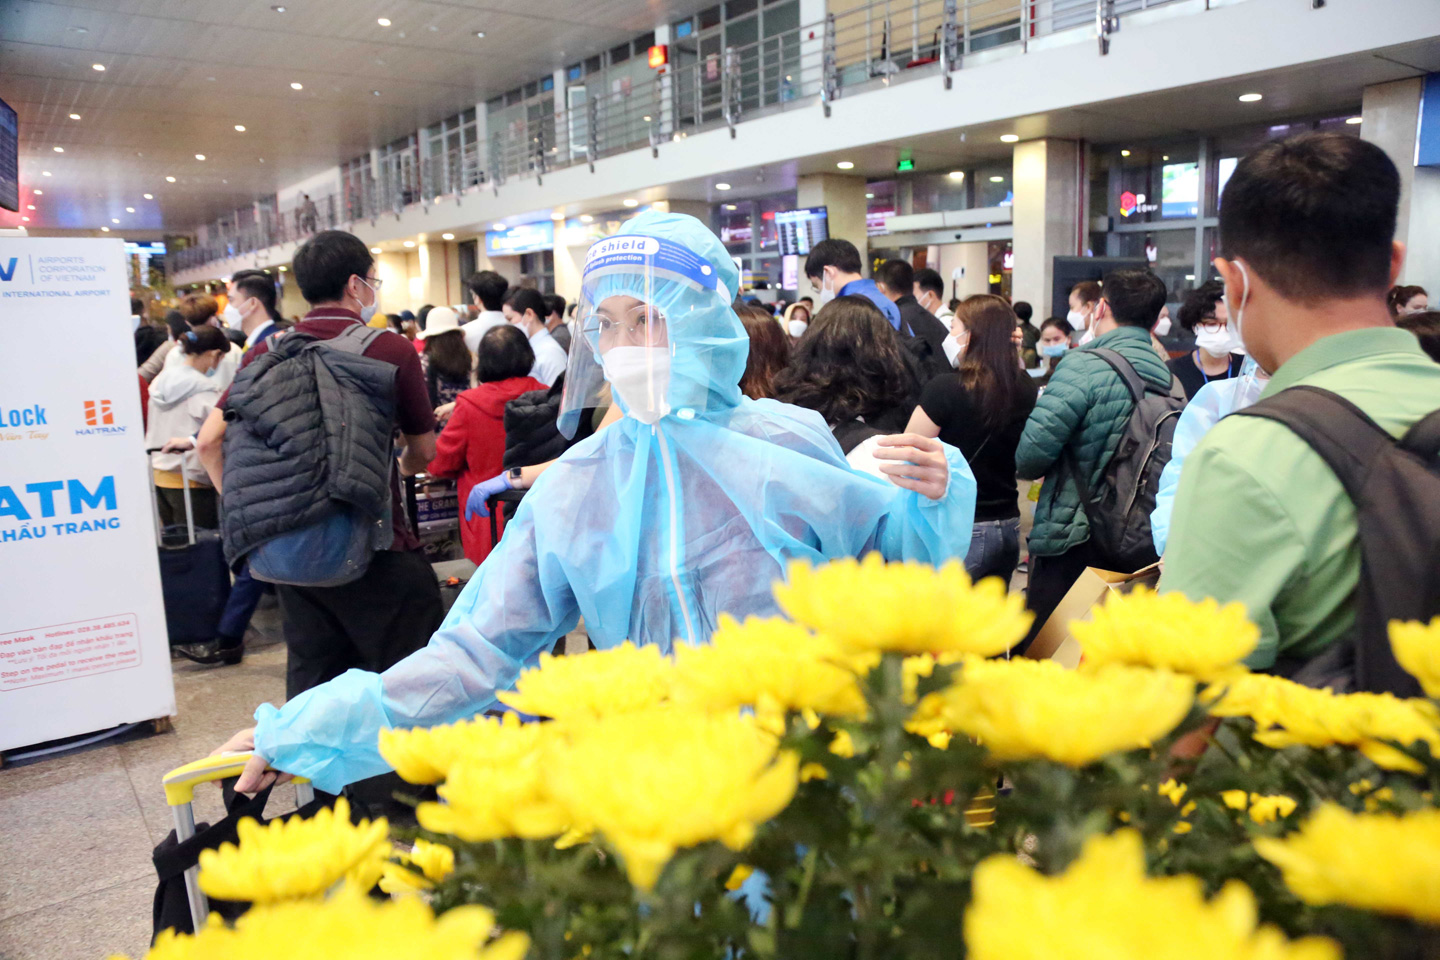 Ảnh: Sân bay Tân Sơn Nhất nghẹt người, khách nằm dài giữa nhà ga cả đêm chờ chuyến bay - 14